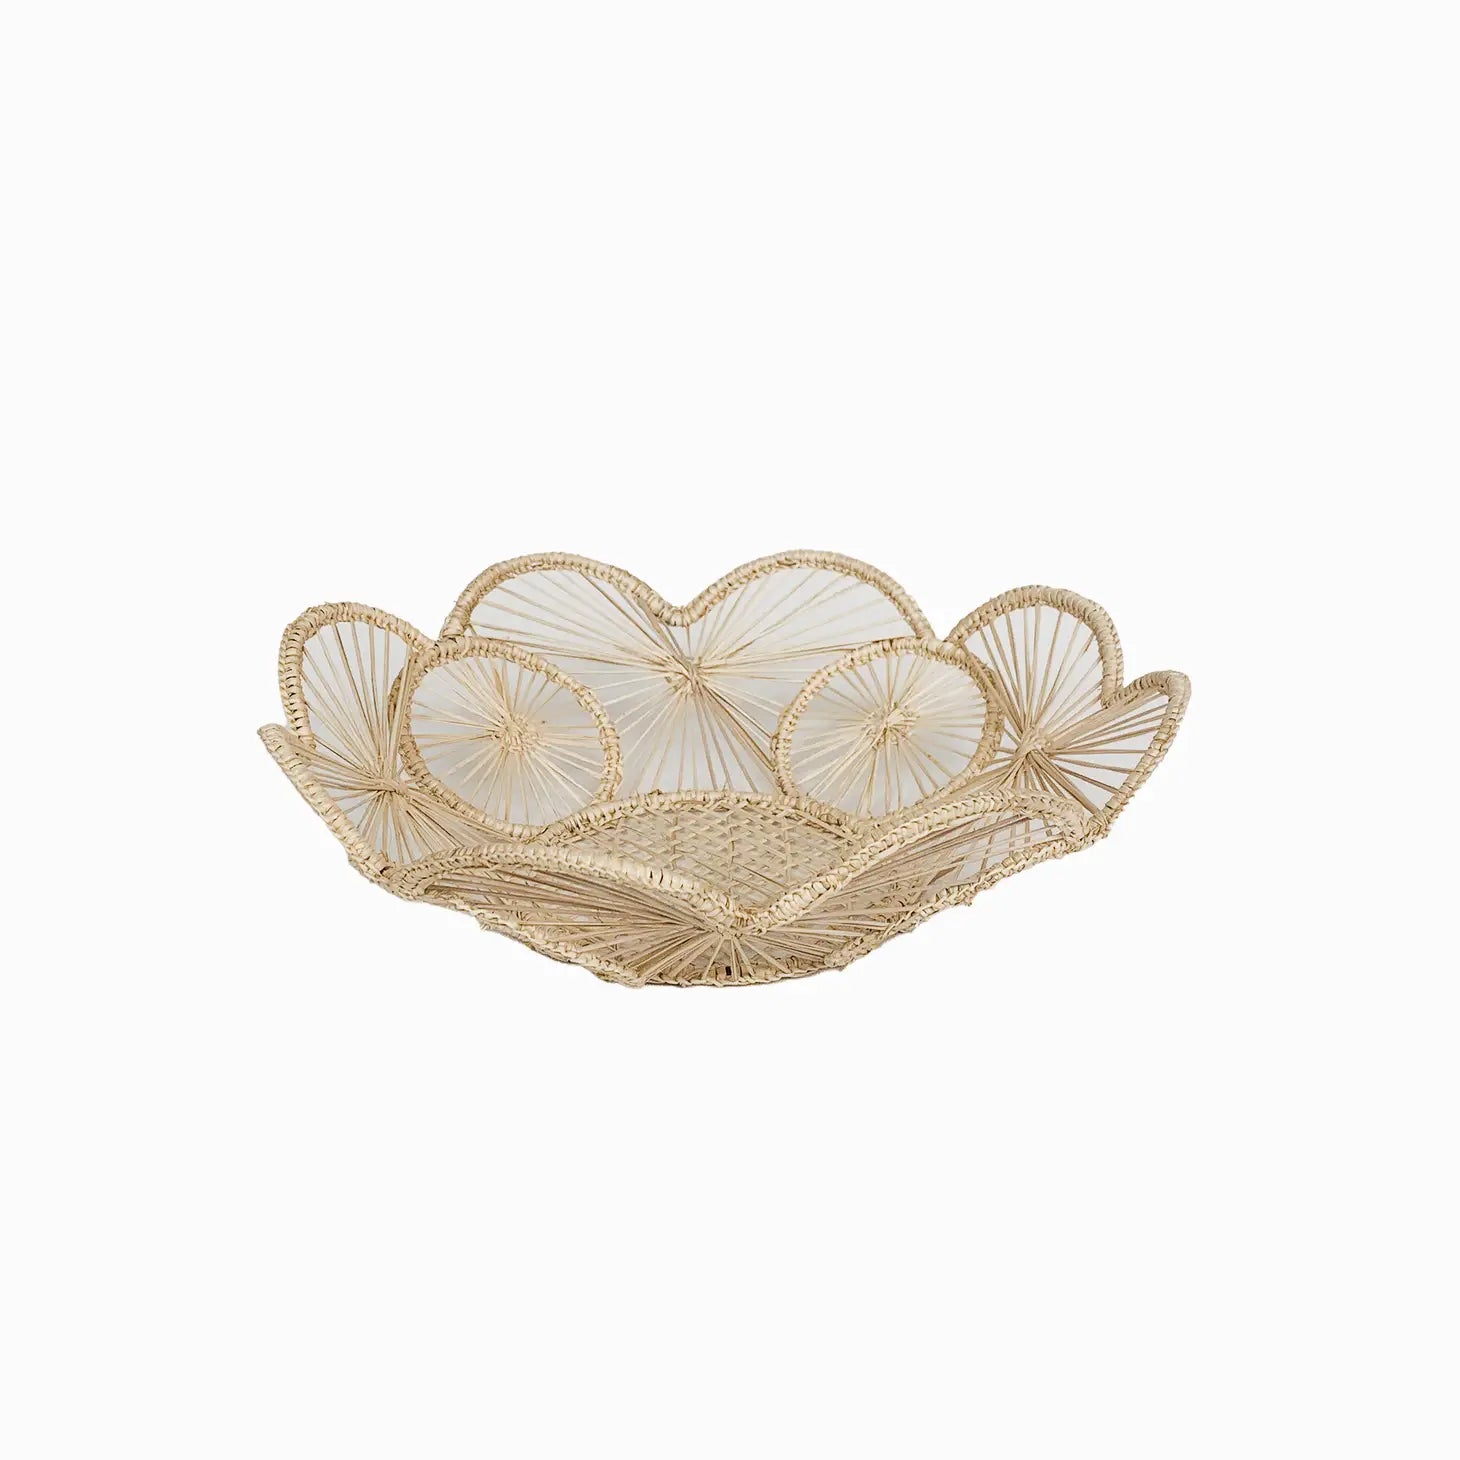 Flower Woven Bread Basket | Straw Raffia